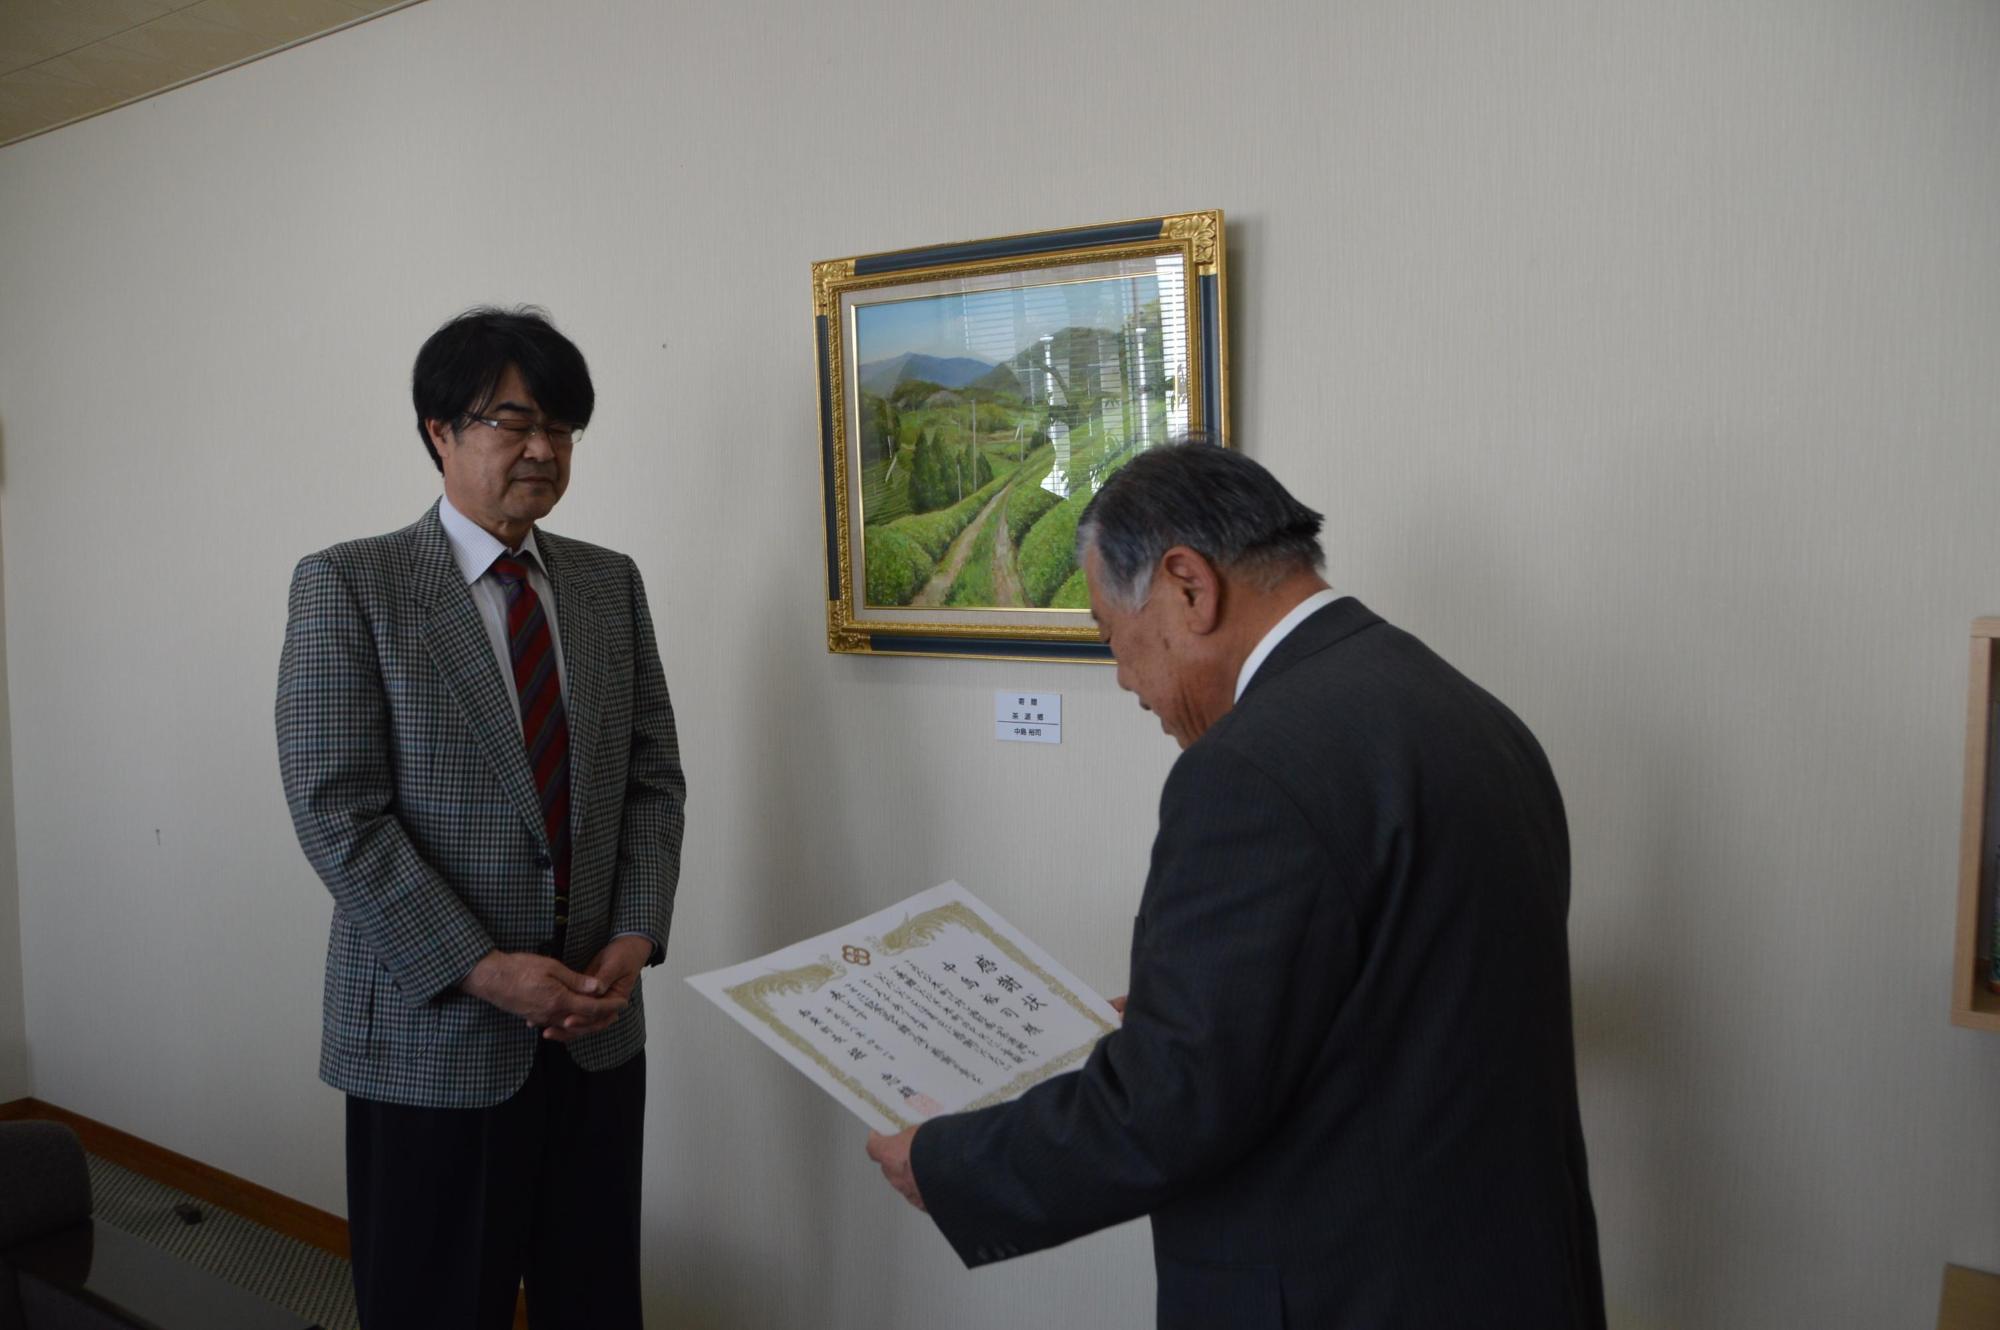 額縁に入った絵が飾られてある壁の前で男性が中島裕司氏に表彰状を読み上げている写真